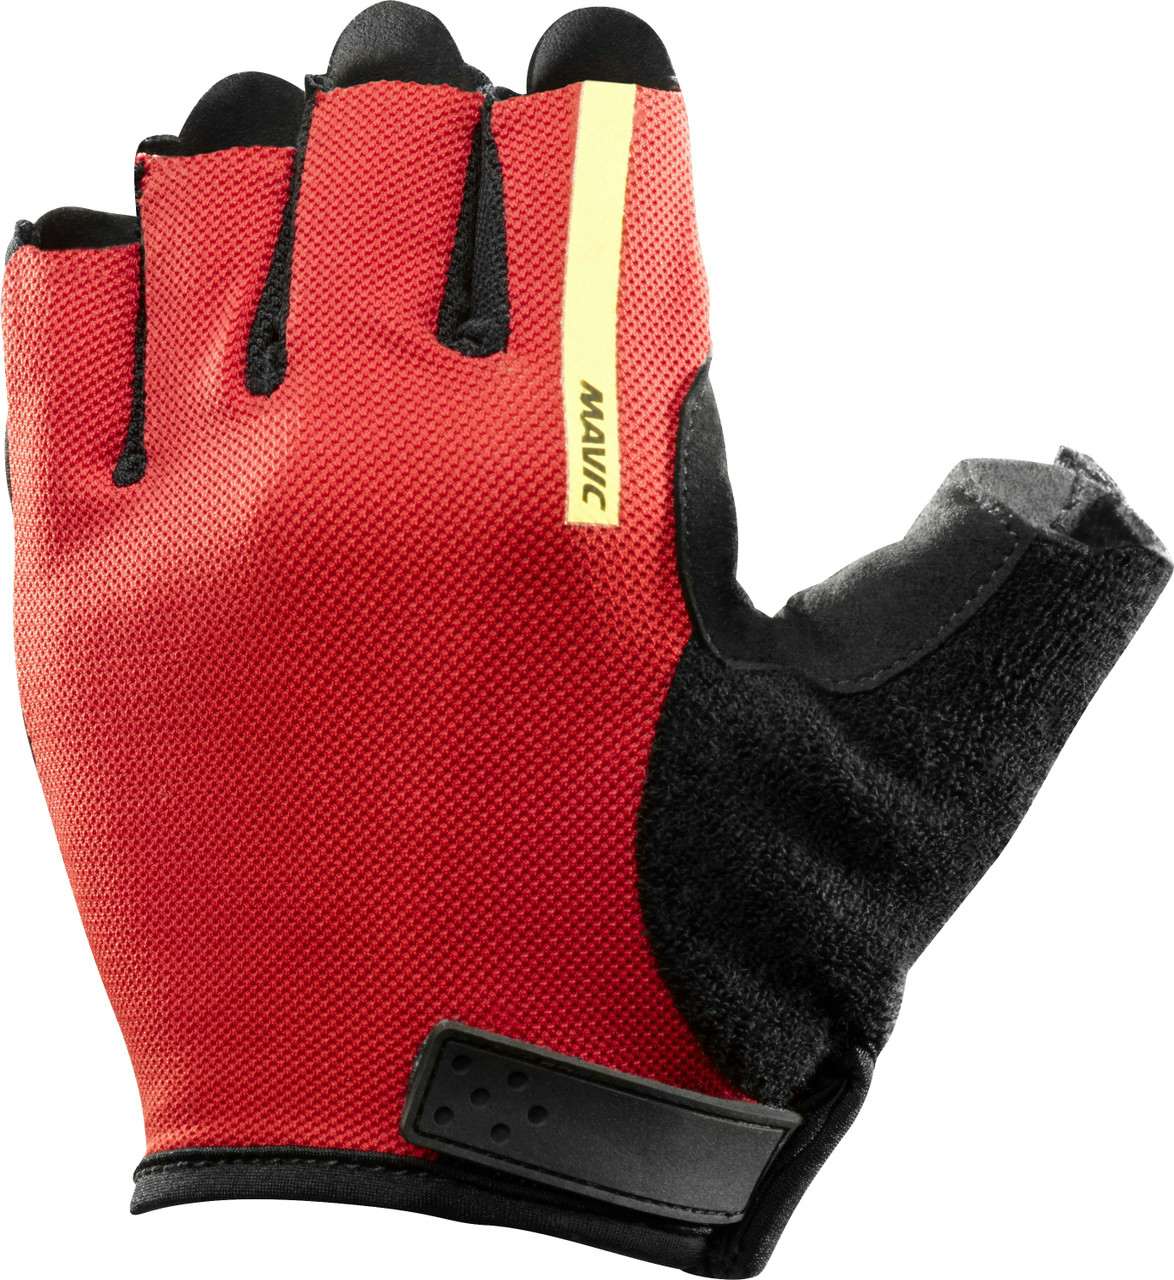 Aksium Gloves Bright Red